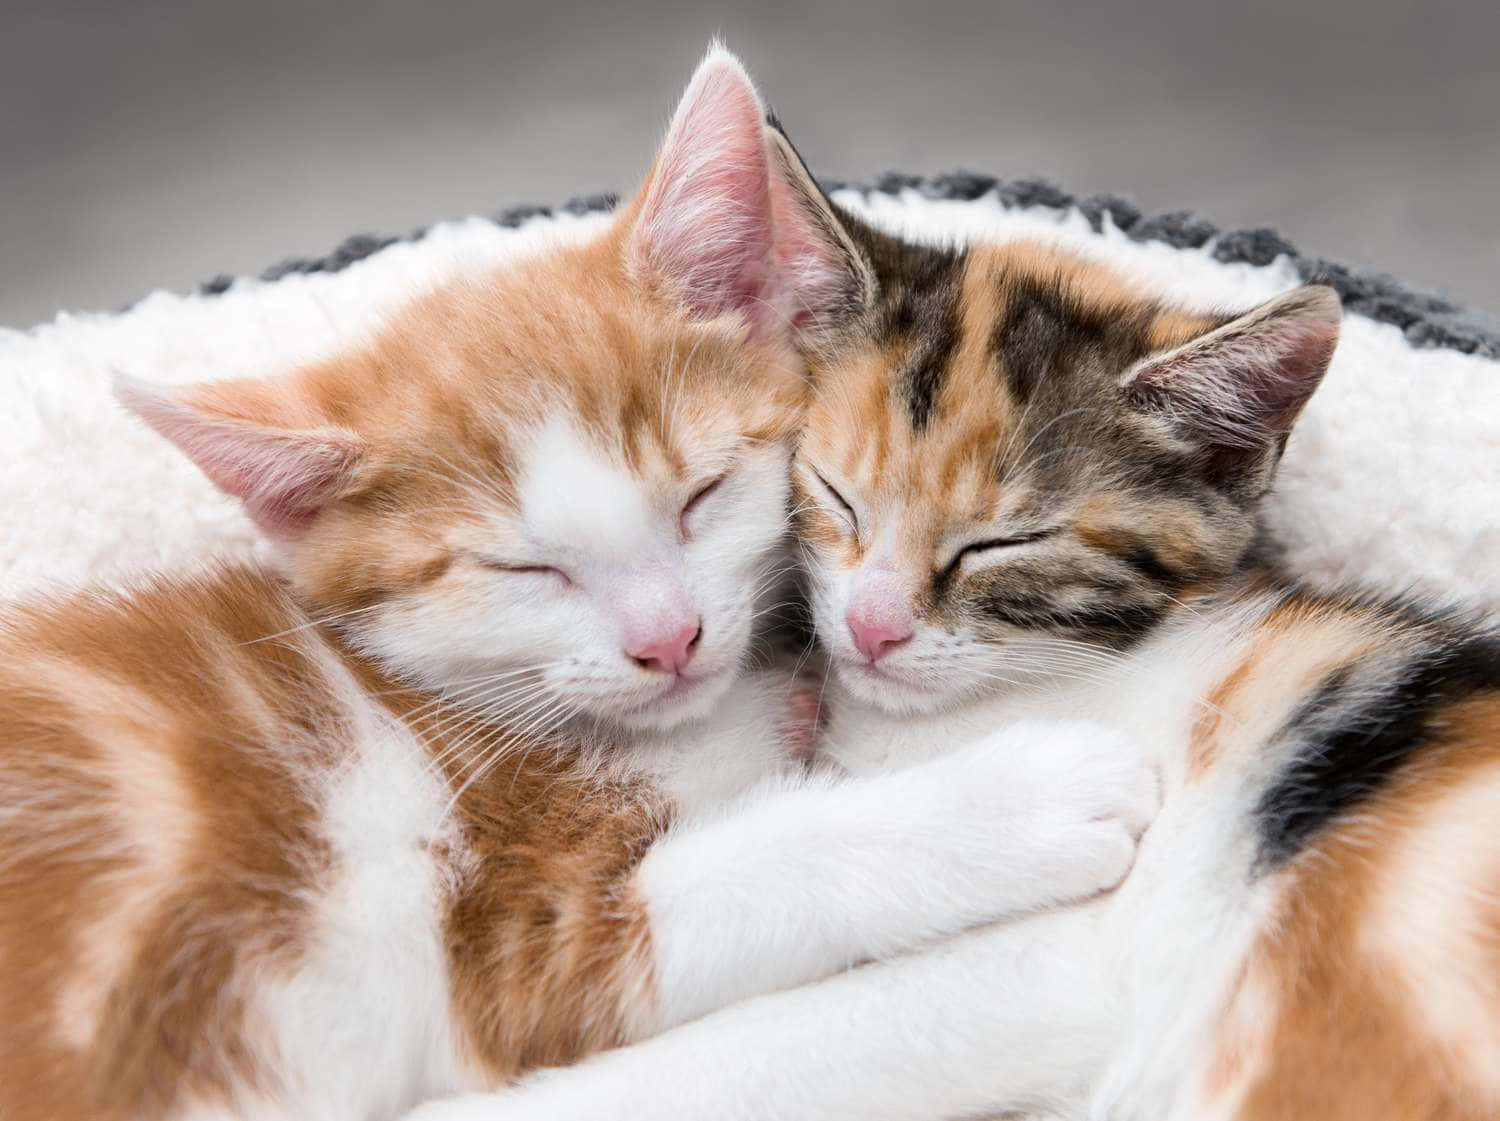 Tvåkattungar Sover I En Säng.